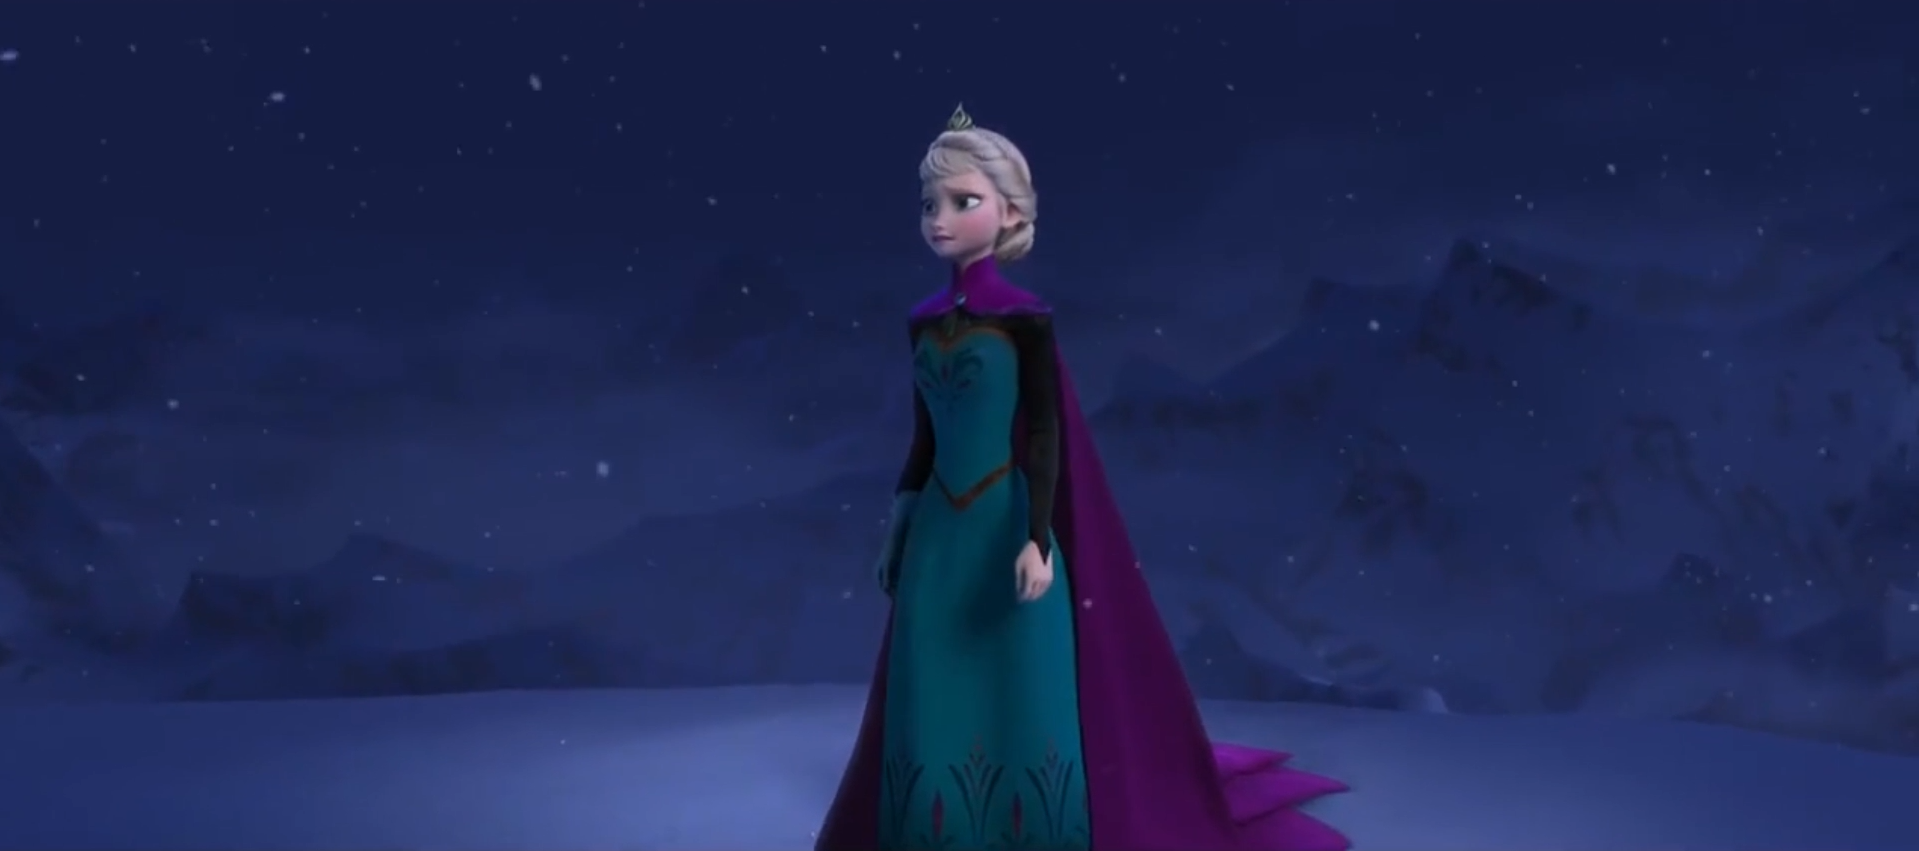 【原声经典】《Let It Go》| Idina Menzel(伊迪娜·门泽尔),冰雪女王惊艳世界! ……